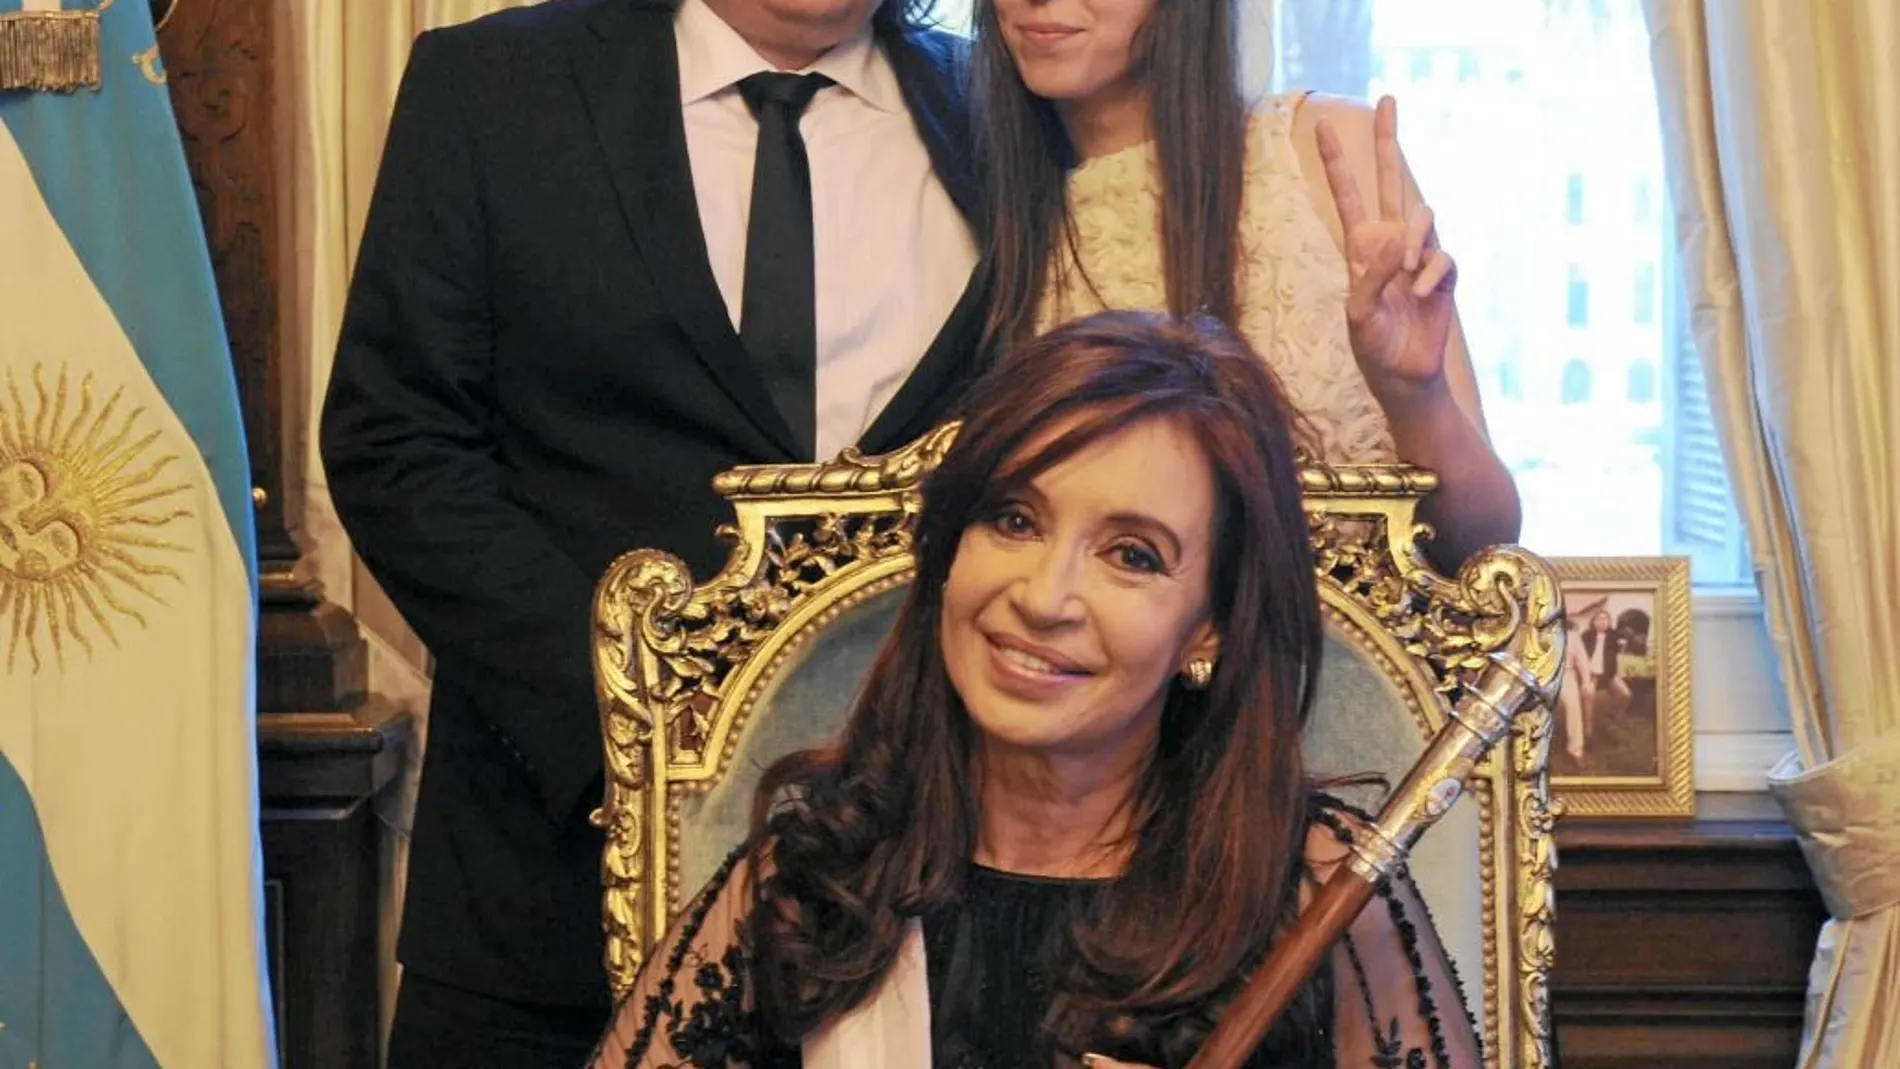 La presidenta argentina, Cristina Fernández de Kirchner, posa junto a sus hijos, Máximo y Florencia, en 2011